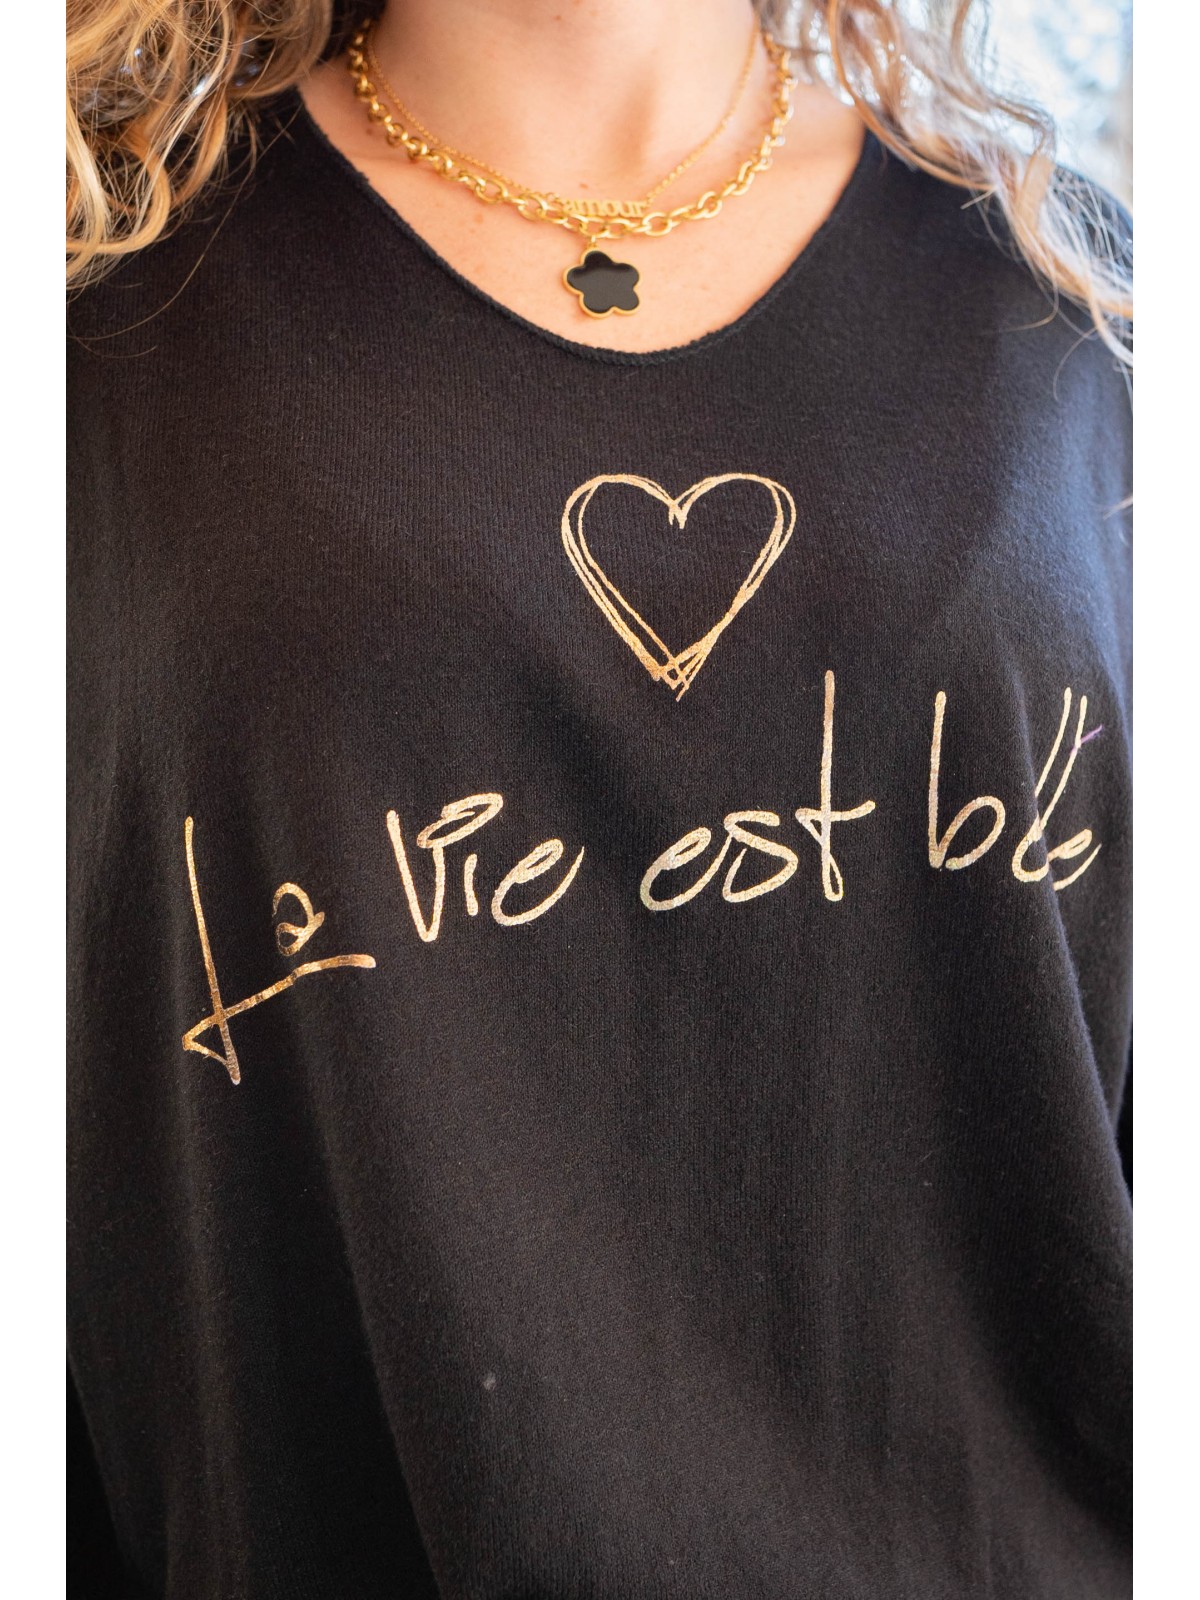 La vie est belle t.shirt noir l 3 vue détail des inscriptions l Tilleulmenthe boutique de mode femme en ligne